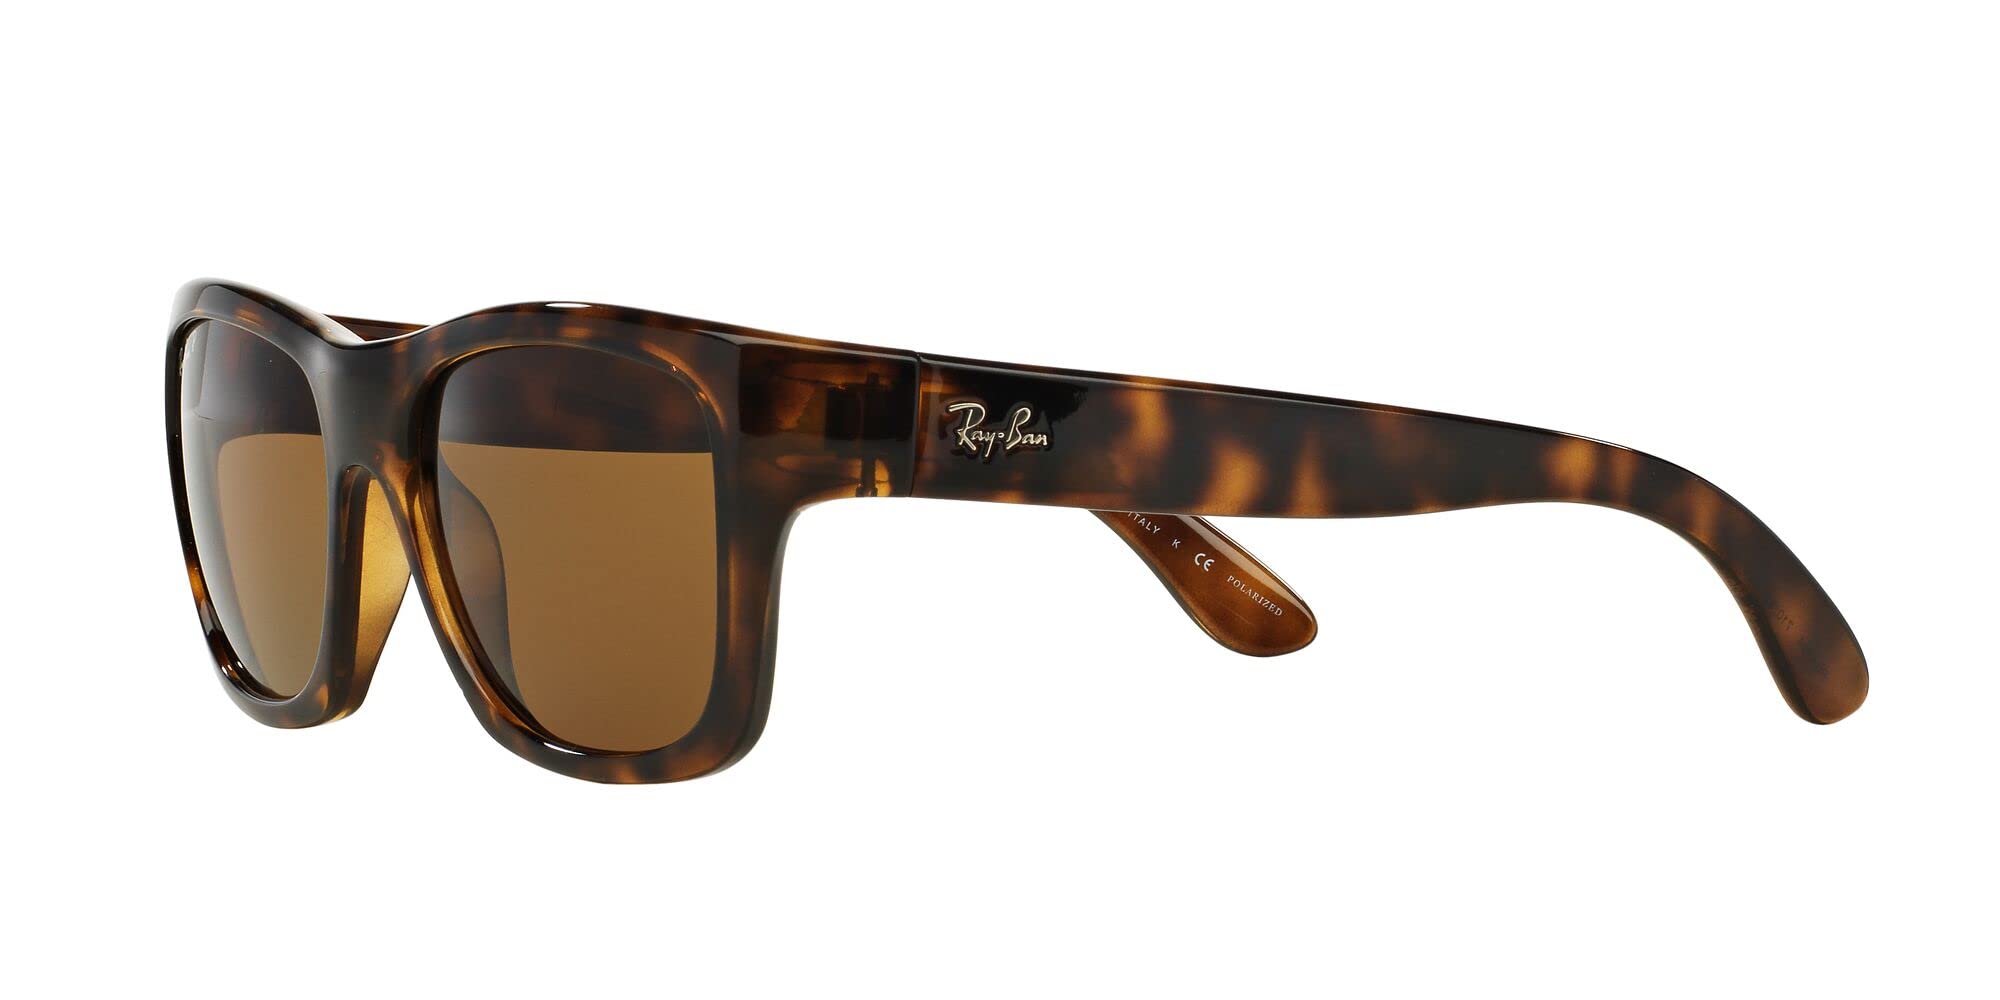 Ray-Ban Unisex Sunglasses Light Havana Frame, Brown Gradient Lenses, 53MM